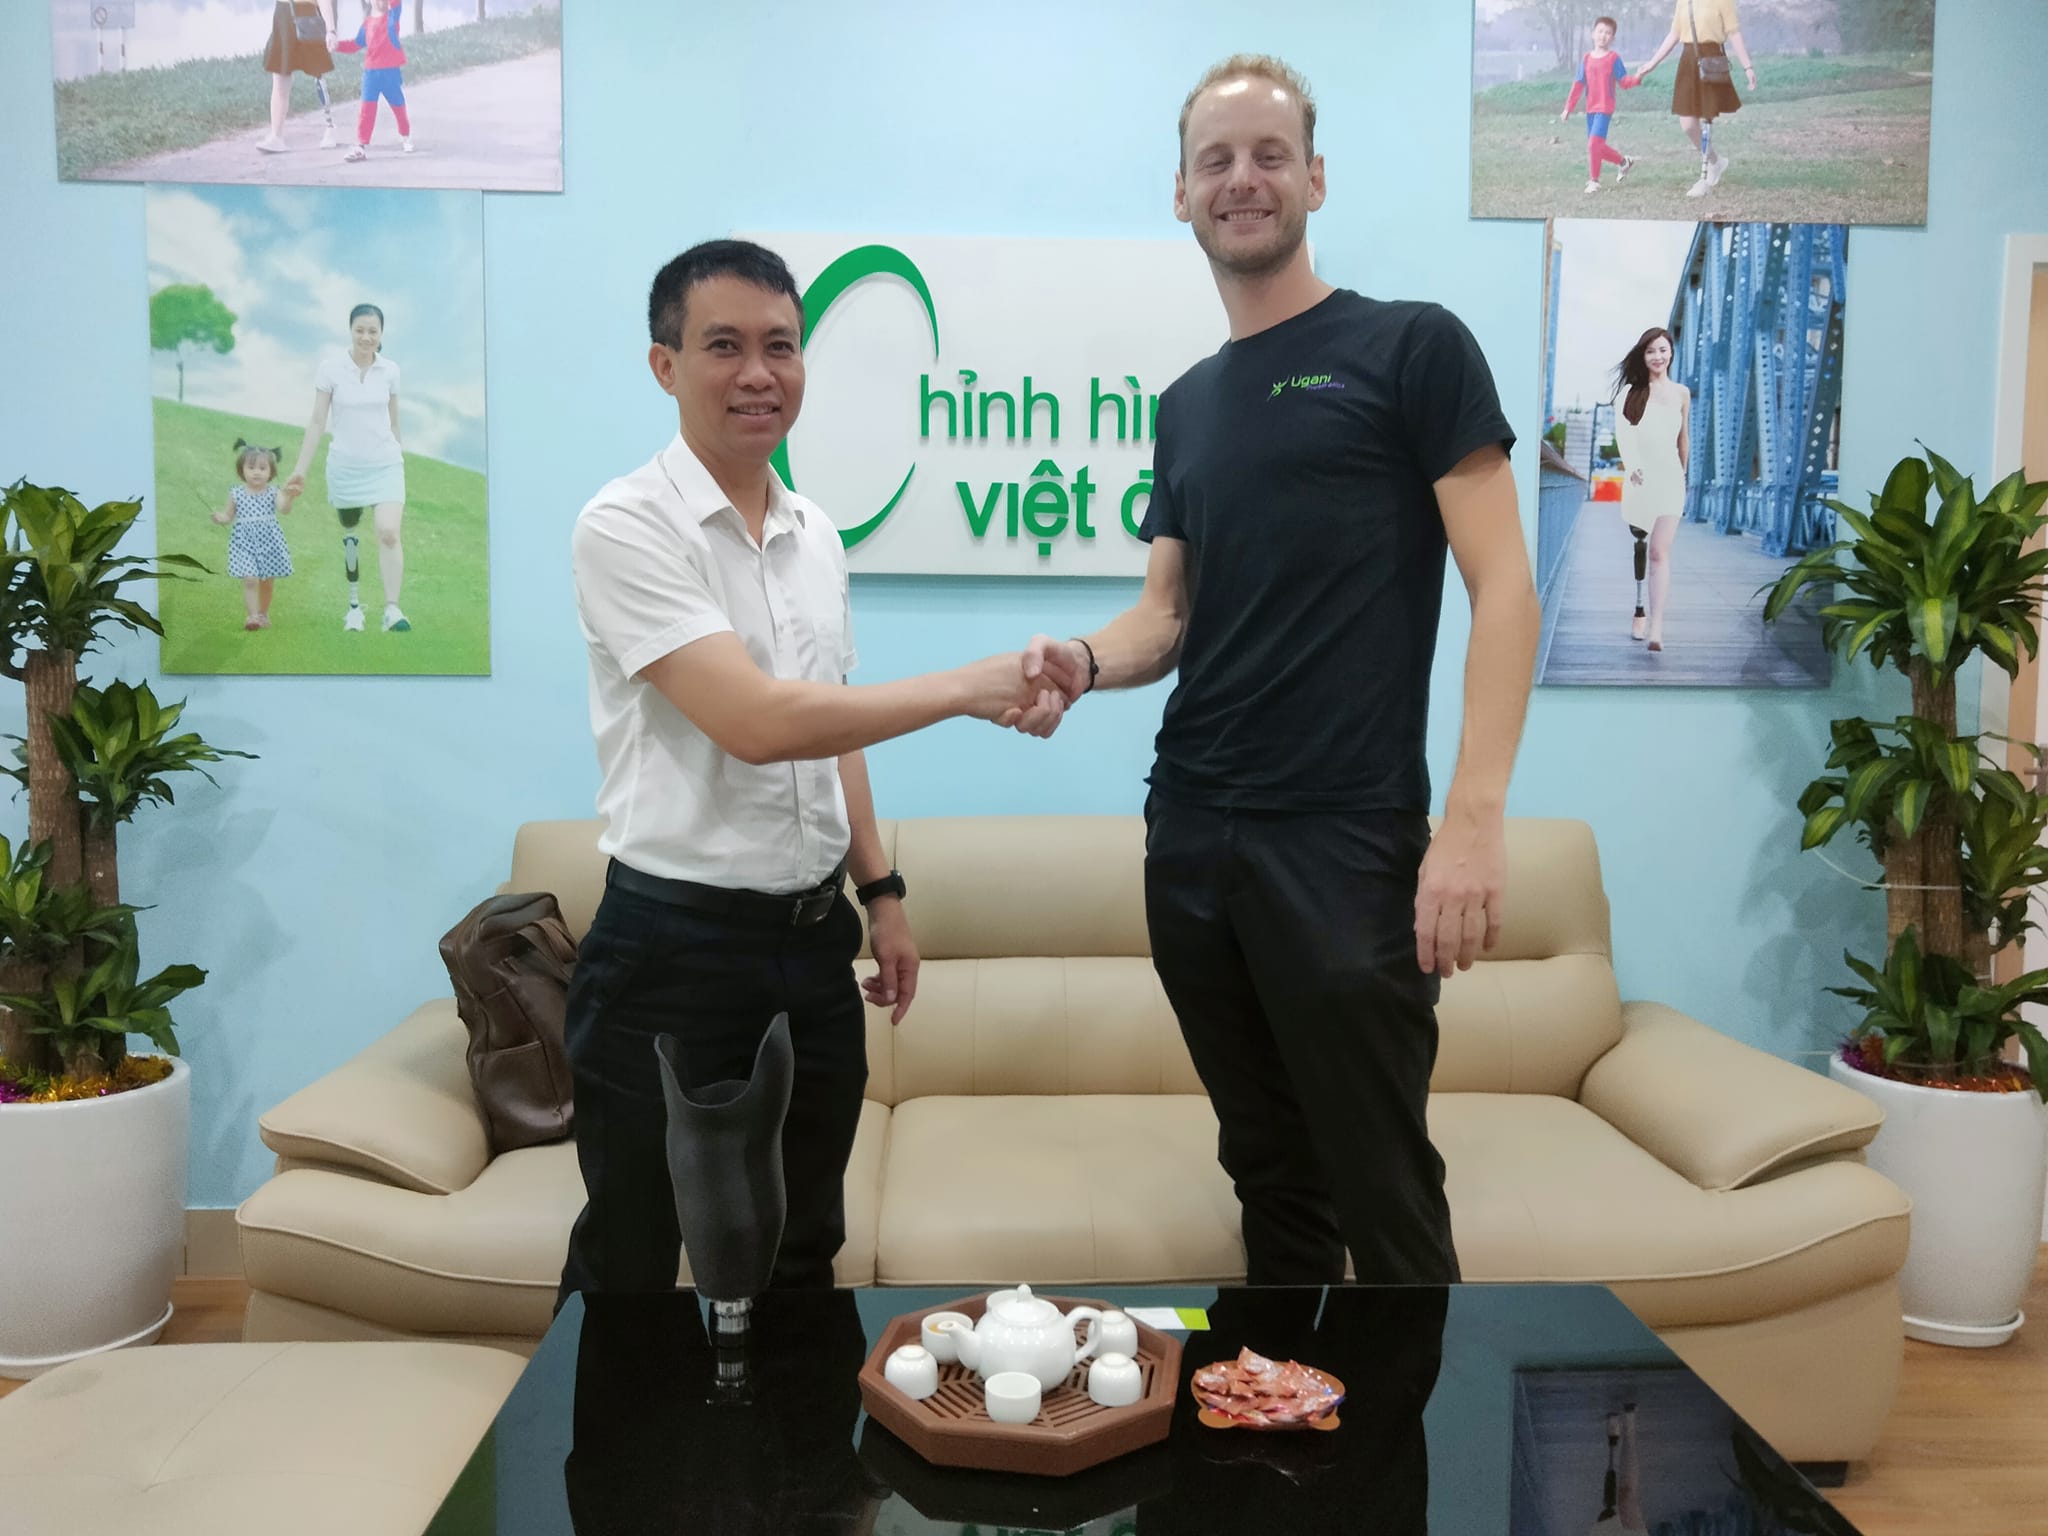 Gặp gỡ Ông Joren Vallaeys tại Chỉnh Hình Việt Đức CS1 Hà Nội